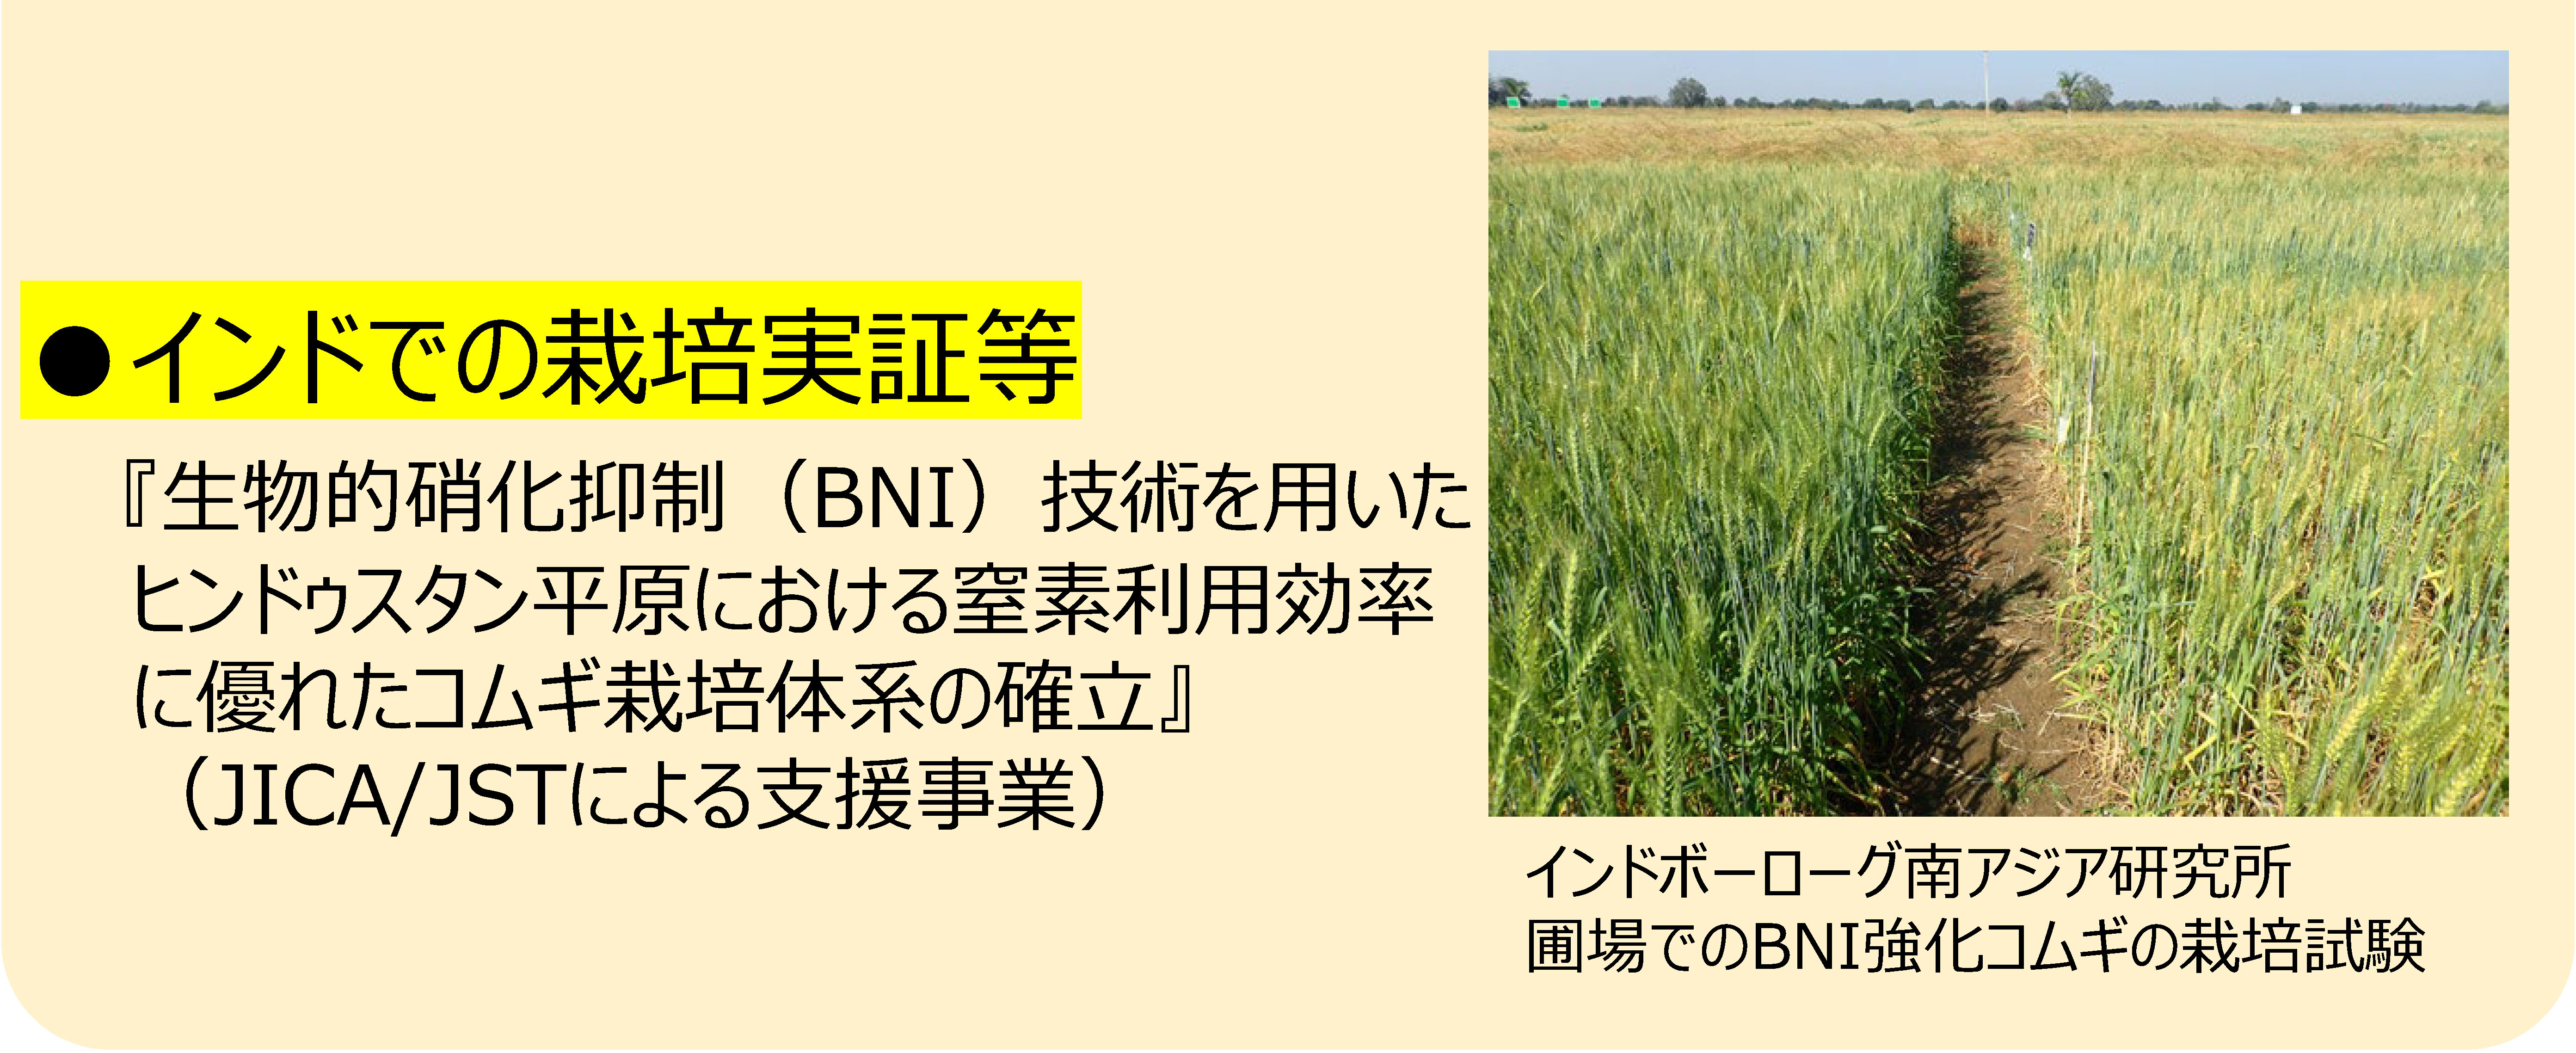 1世界でのBNI強化コムギの開発・普及のうちインドでの栽培実証等について